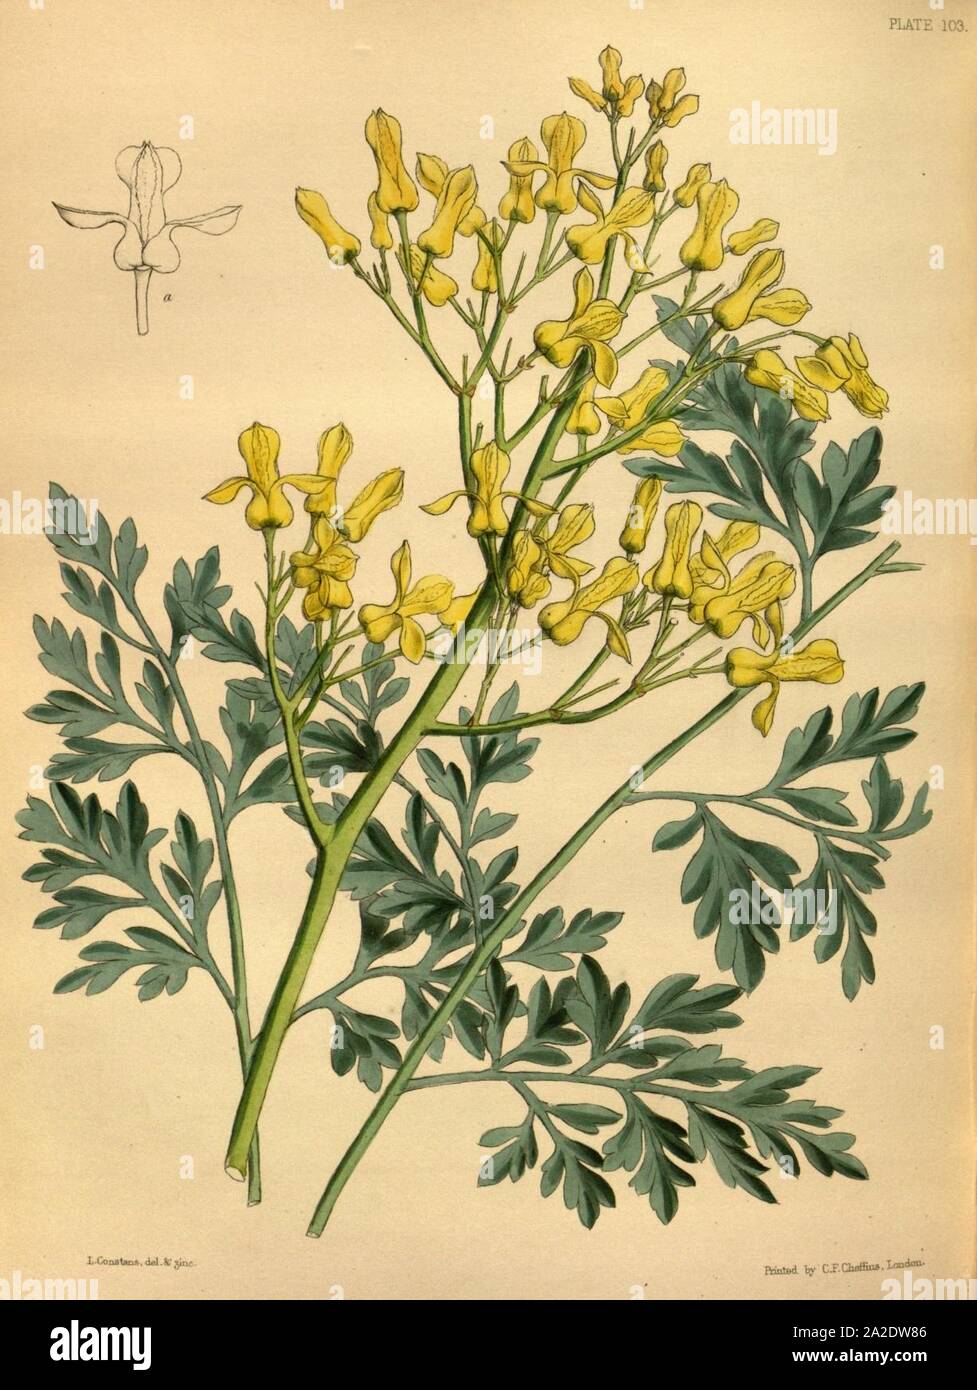 Ehrendorferia chrysantha Paxton 103. Stock Photo